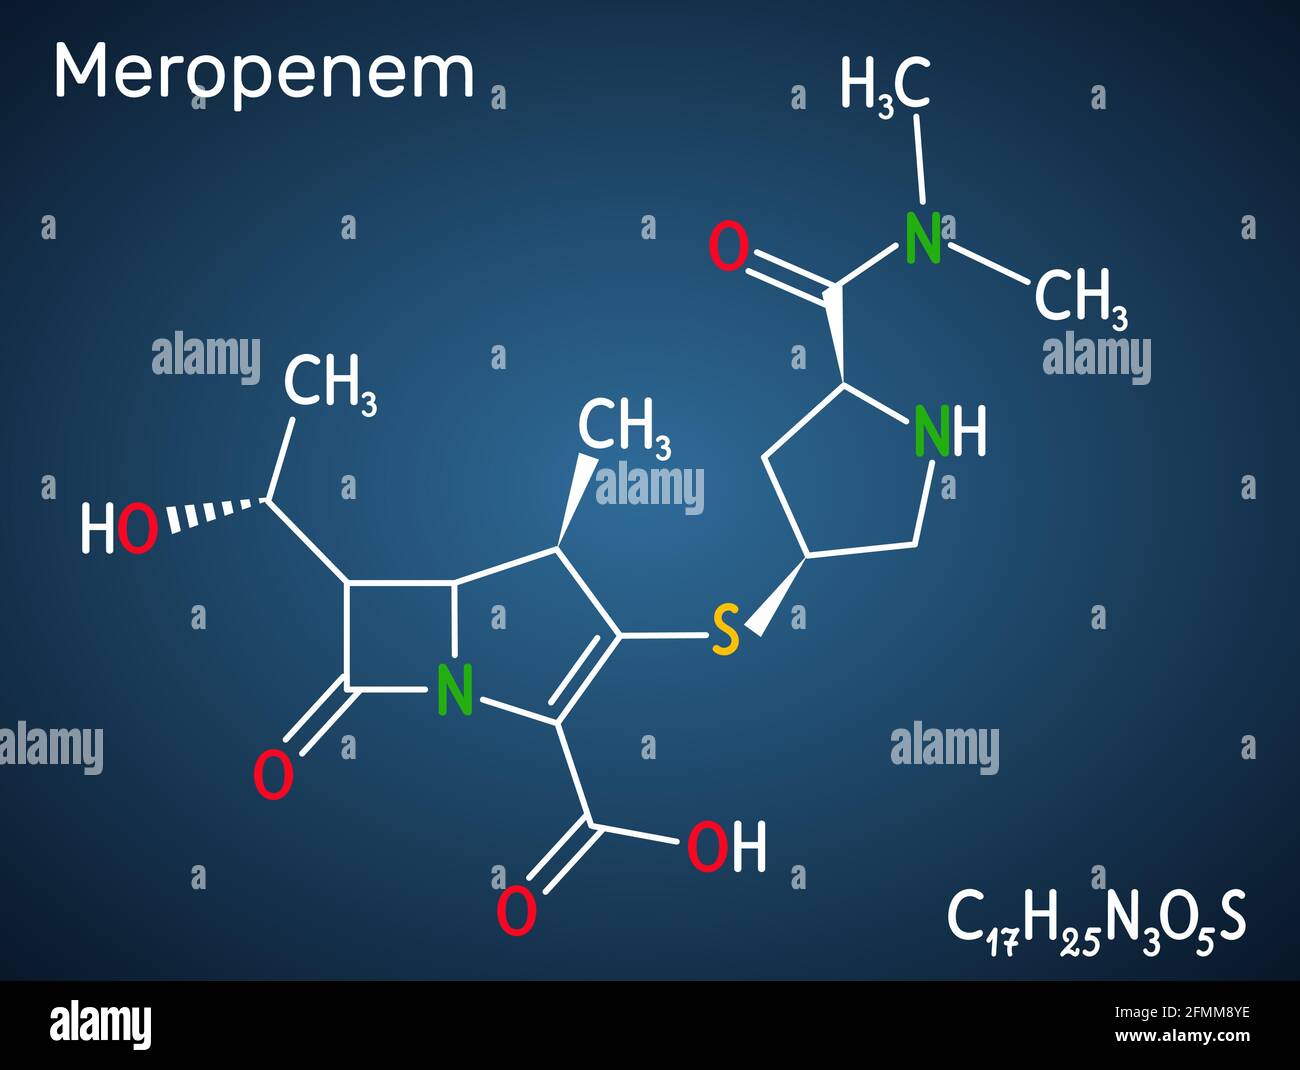 Molécule de meropenem. Il s'agit d'un antibiotique carbapénème à large spectre. Formule chimique structurale et modèle moléculaire sur fond bleu foncé. Vecteur Ill Illustration de Vecteur